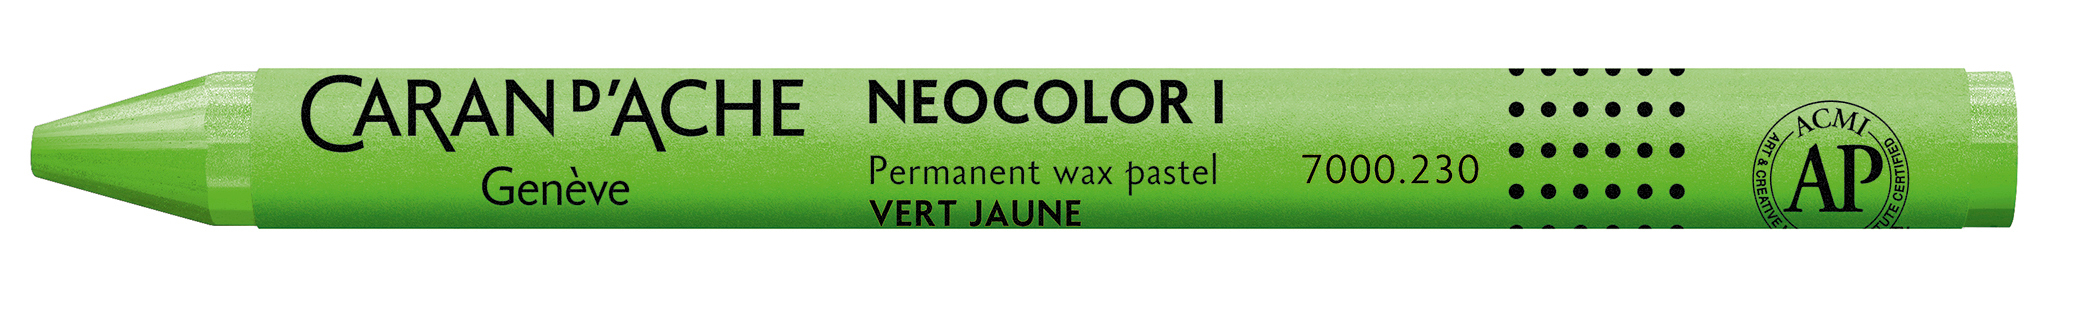 CARAN D'ACHE Crayons de cire Neocolor 1 7000.230 jaune-vert